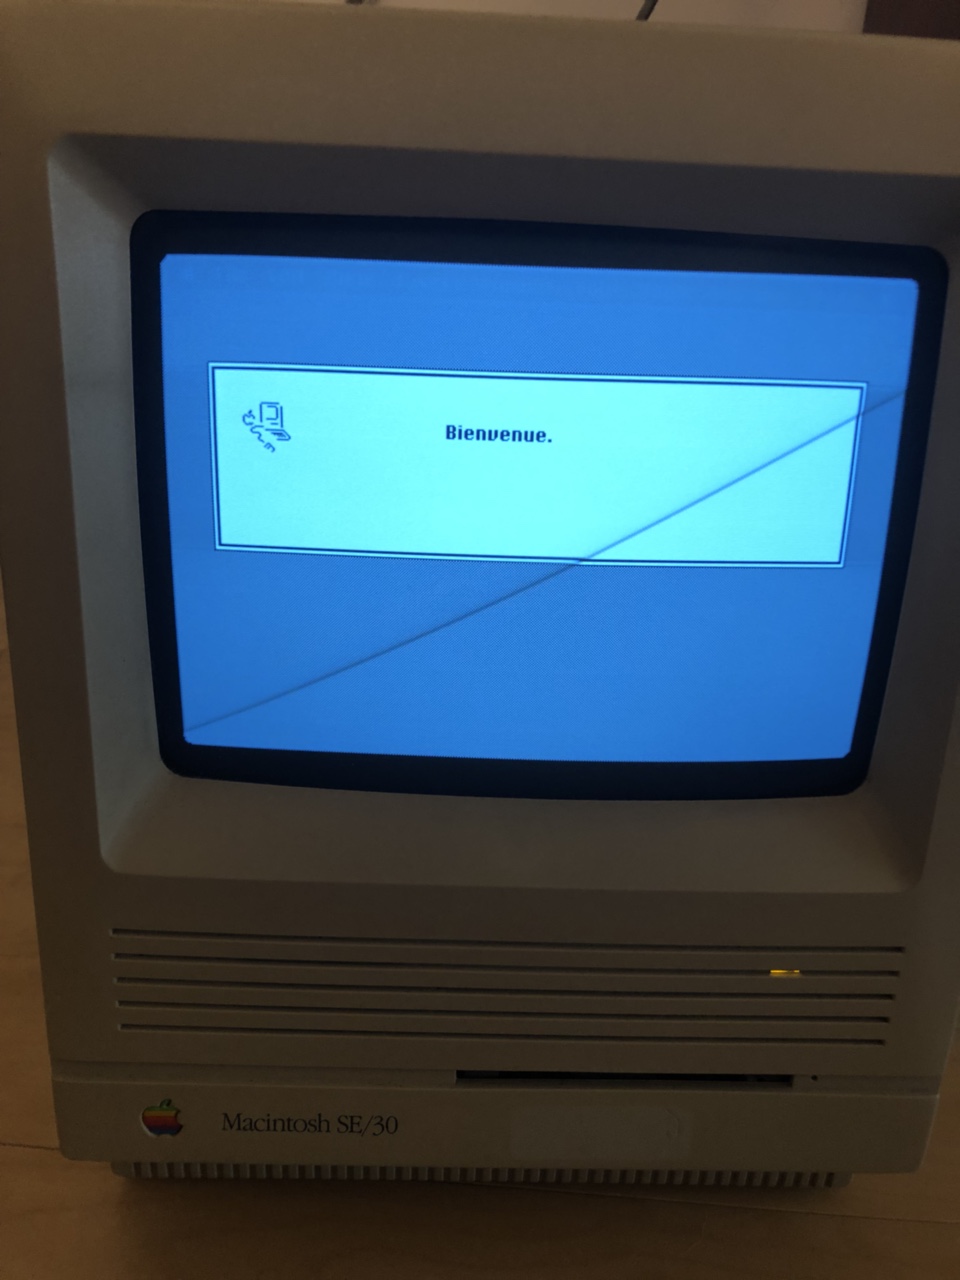 APPLE Macintosh マッキントッシュSE/30 8MB